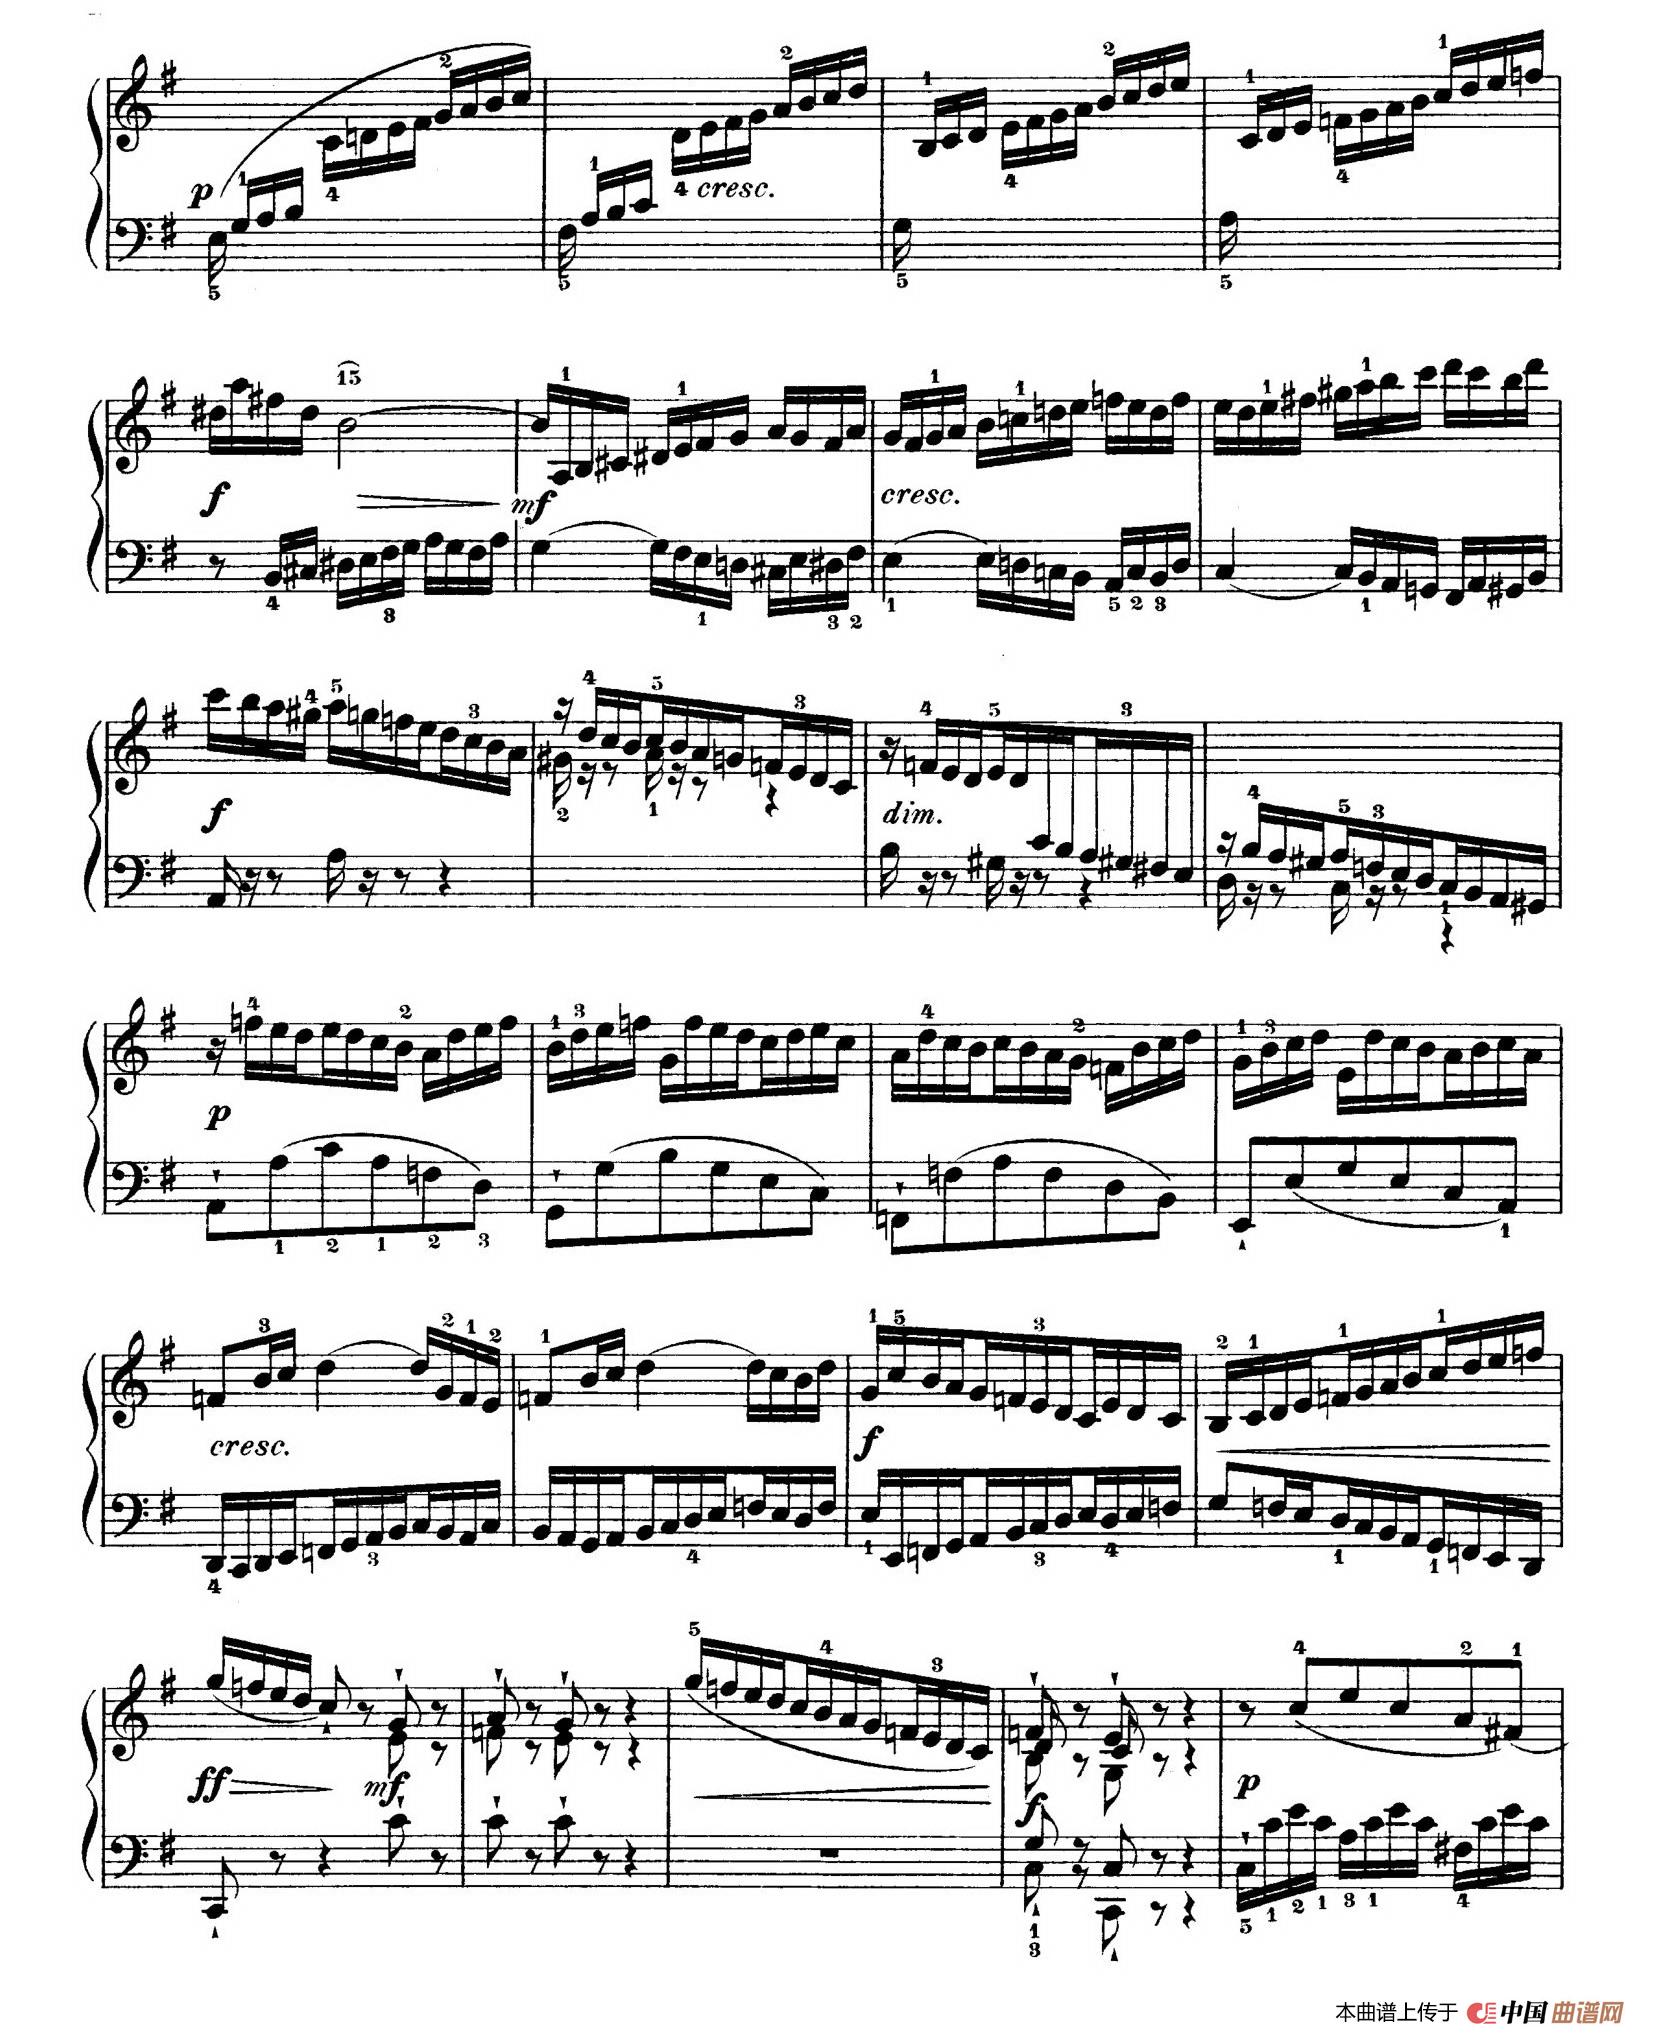 巴赫帕蒂塔1004曲谱_小步舞曲巴赫钢琴曲谱(2)